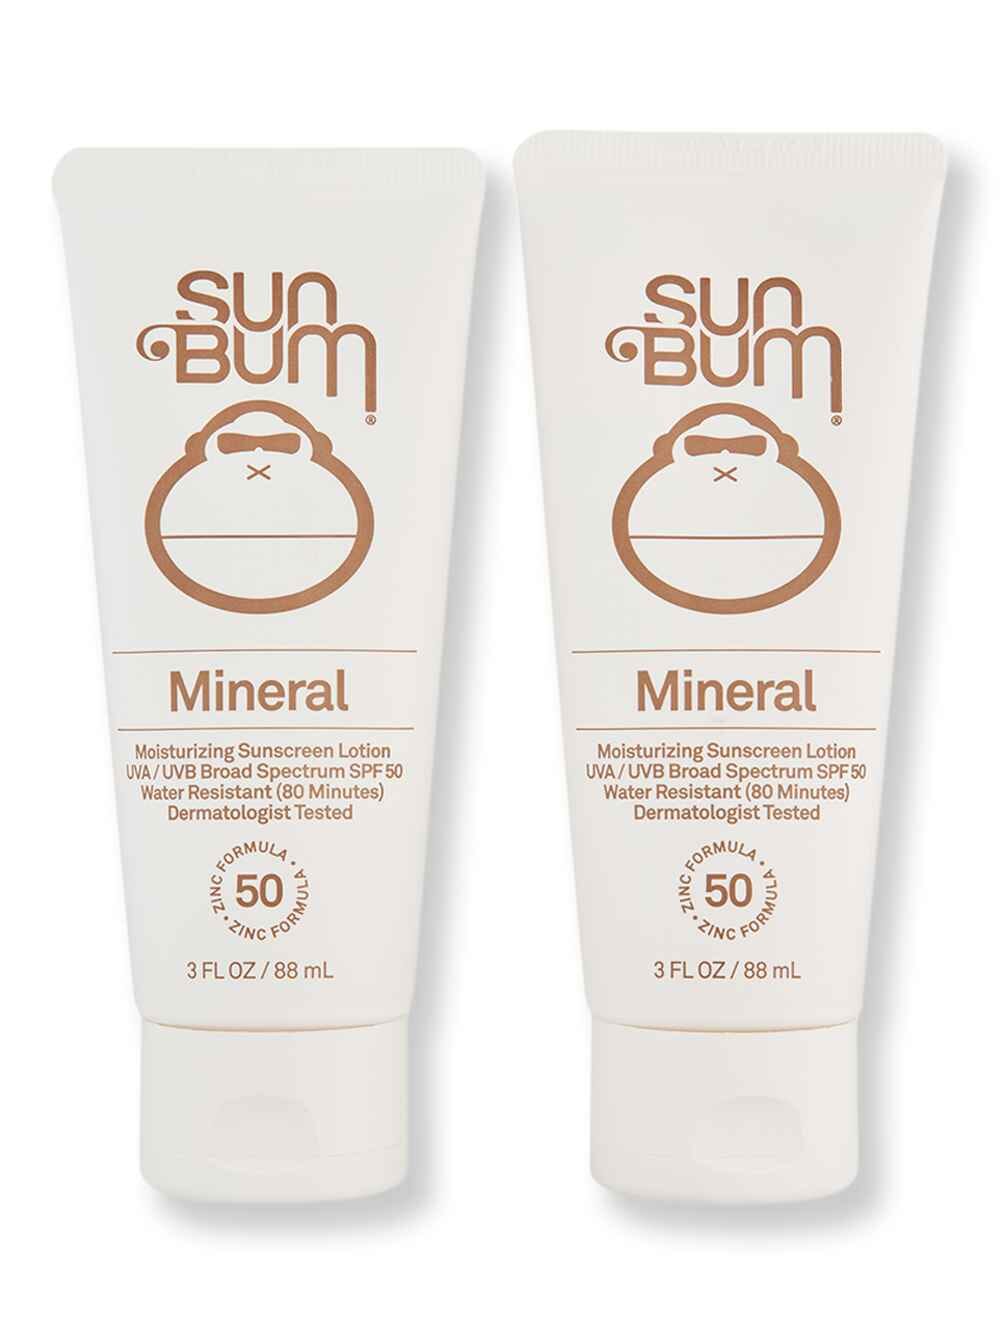 Sun Bum Sun Bum Mineral SPF 50 Sunscreen Lotion 2 Ct 3 oz Body Sunscreens 